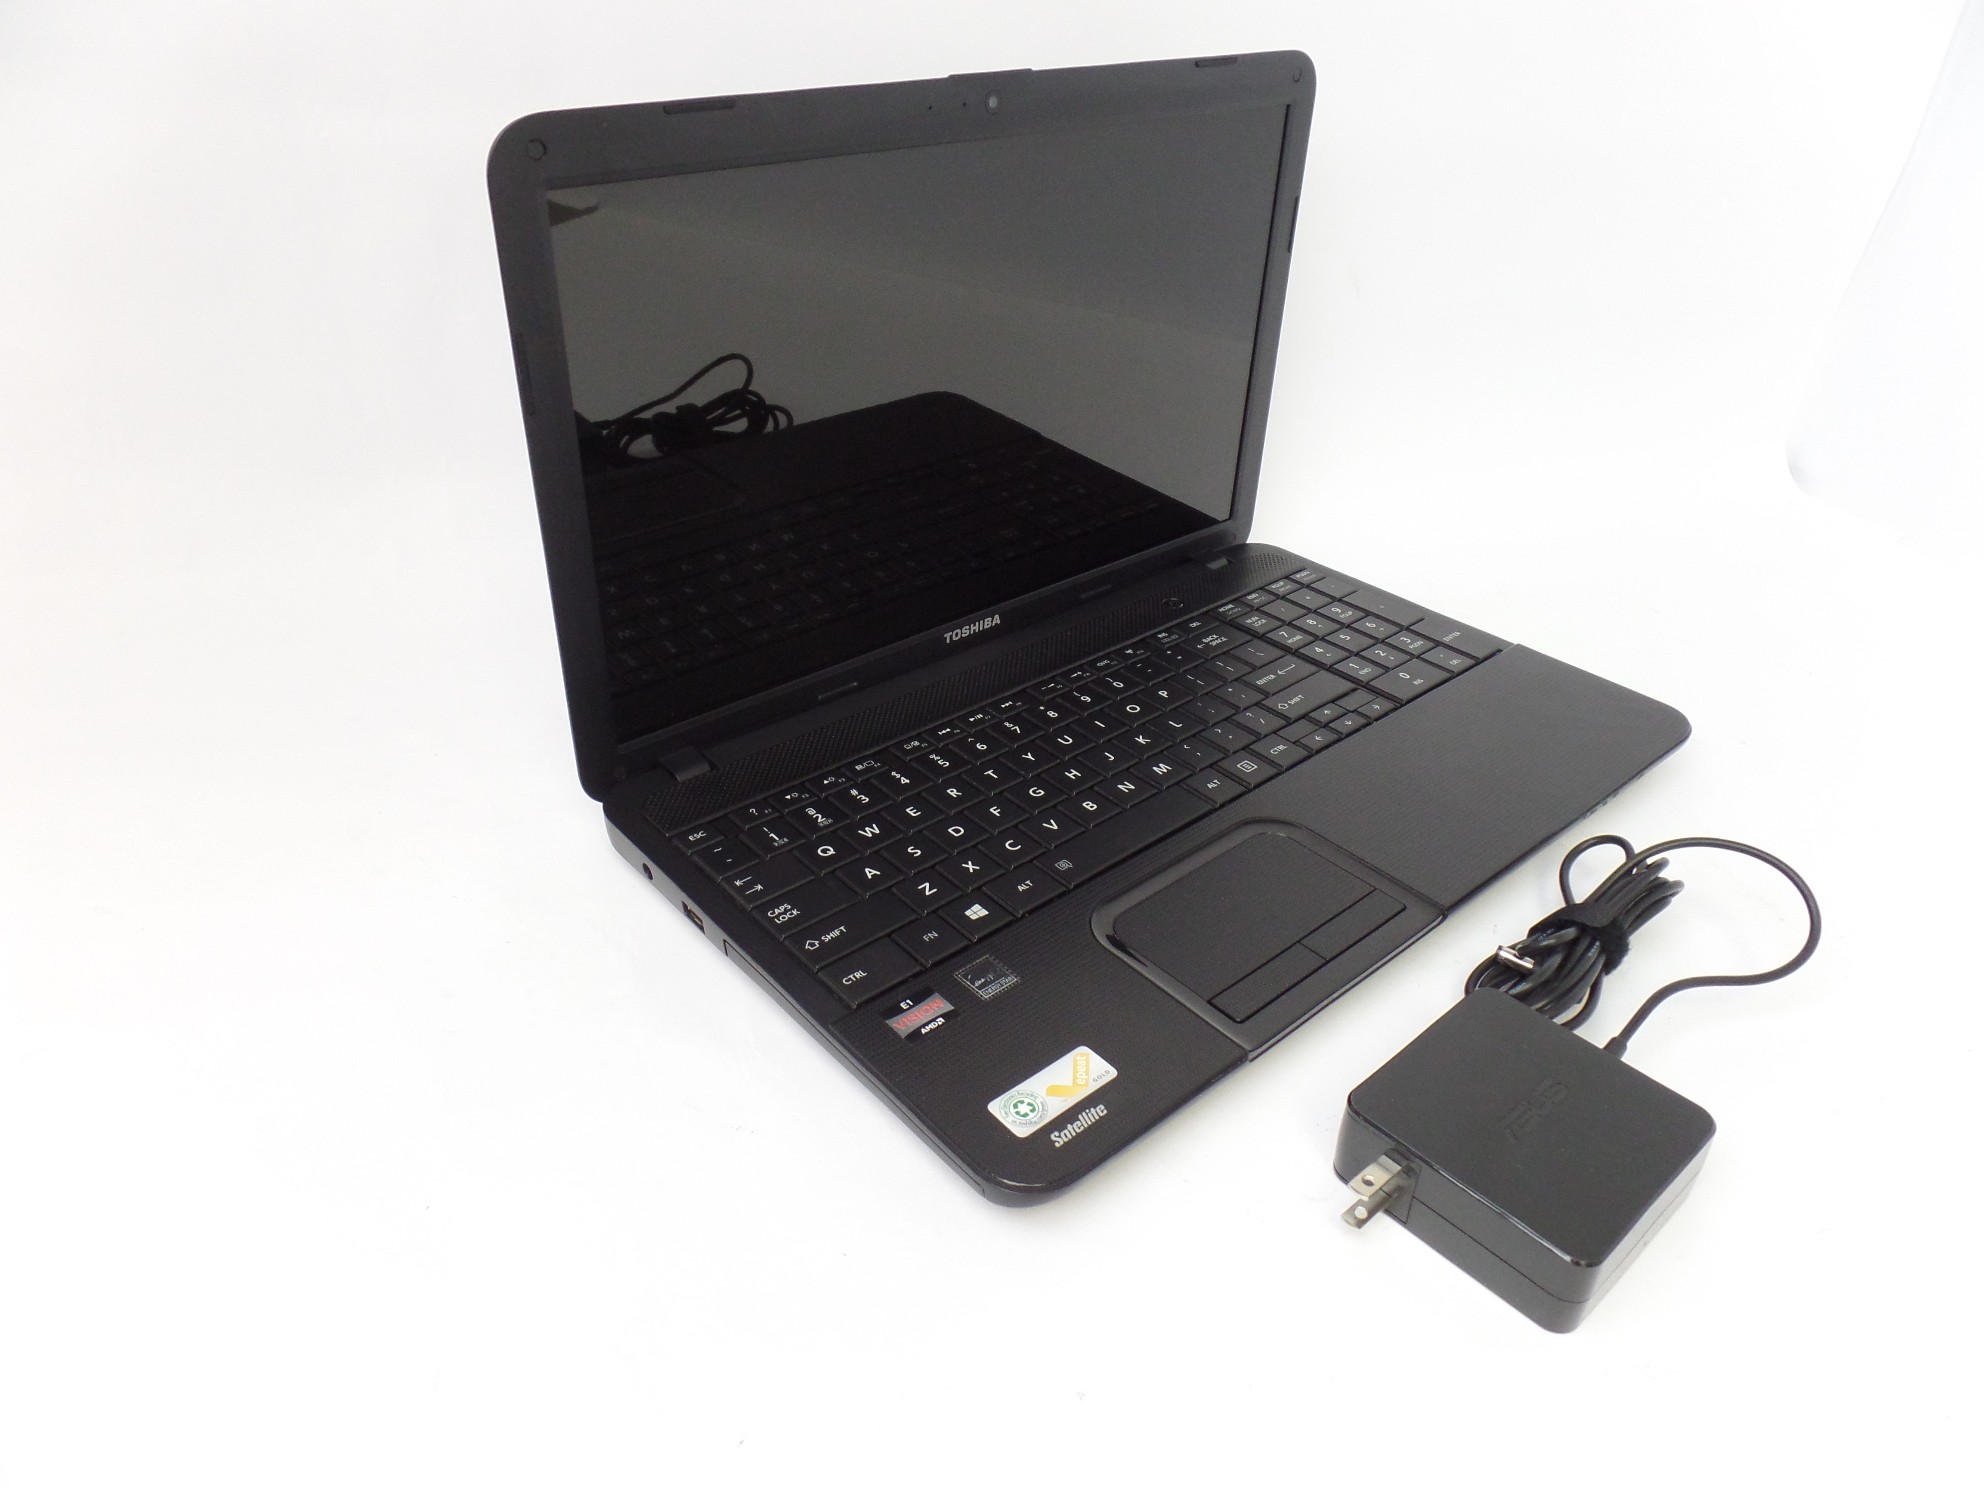 Toshiba Satellite C855D-S5201 15.6" HD AMD E1-1200 1.4GHz 4GB 640GB W8 Laptop U